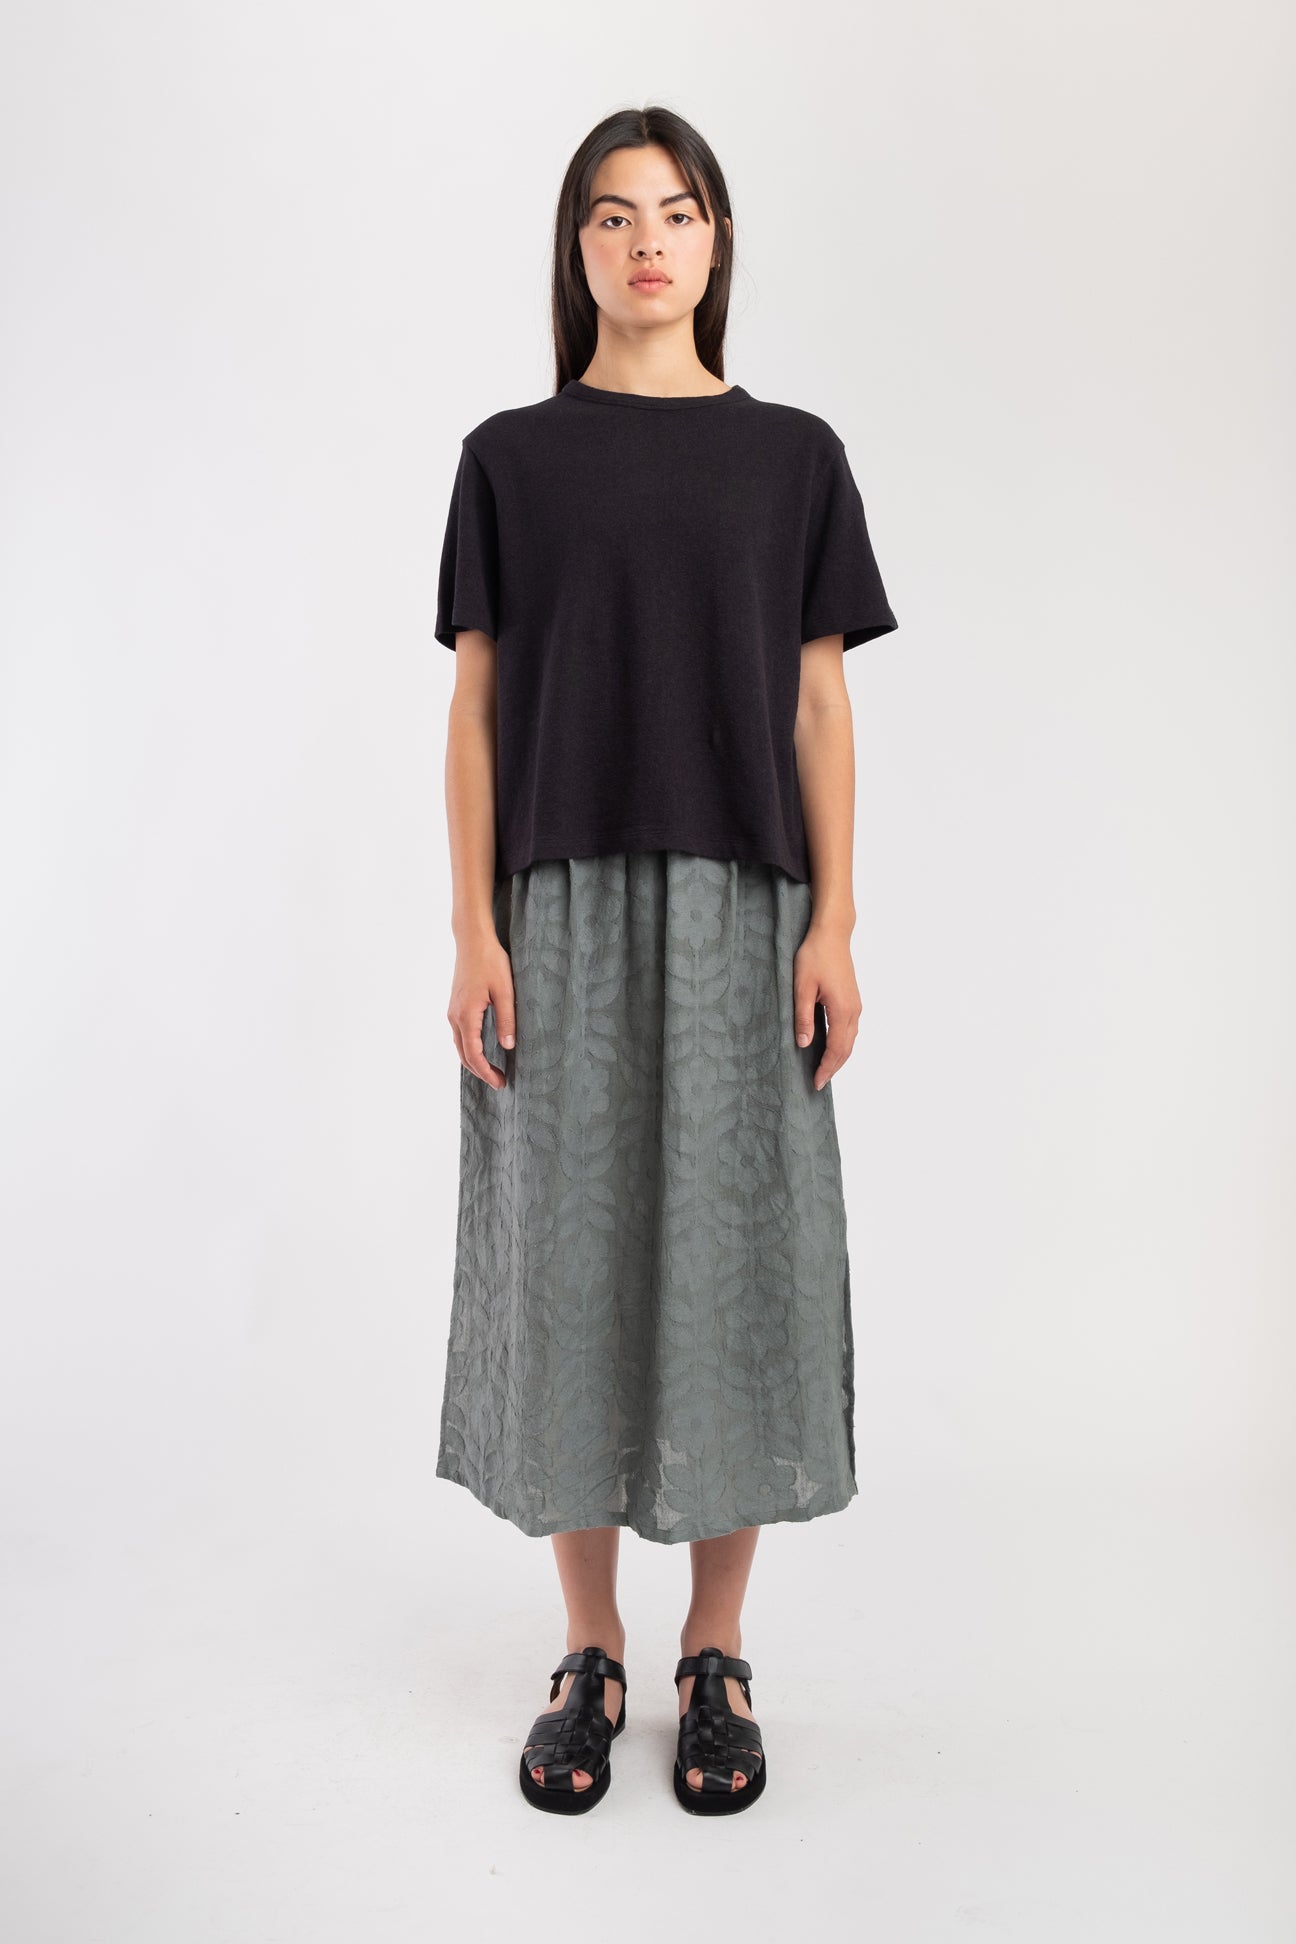 通販セール【新品タグ付き】Floral Jacquard Volume Skirt スカート